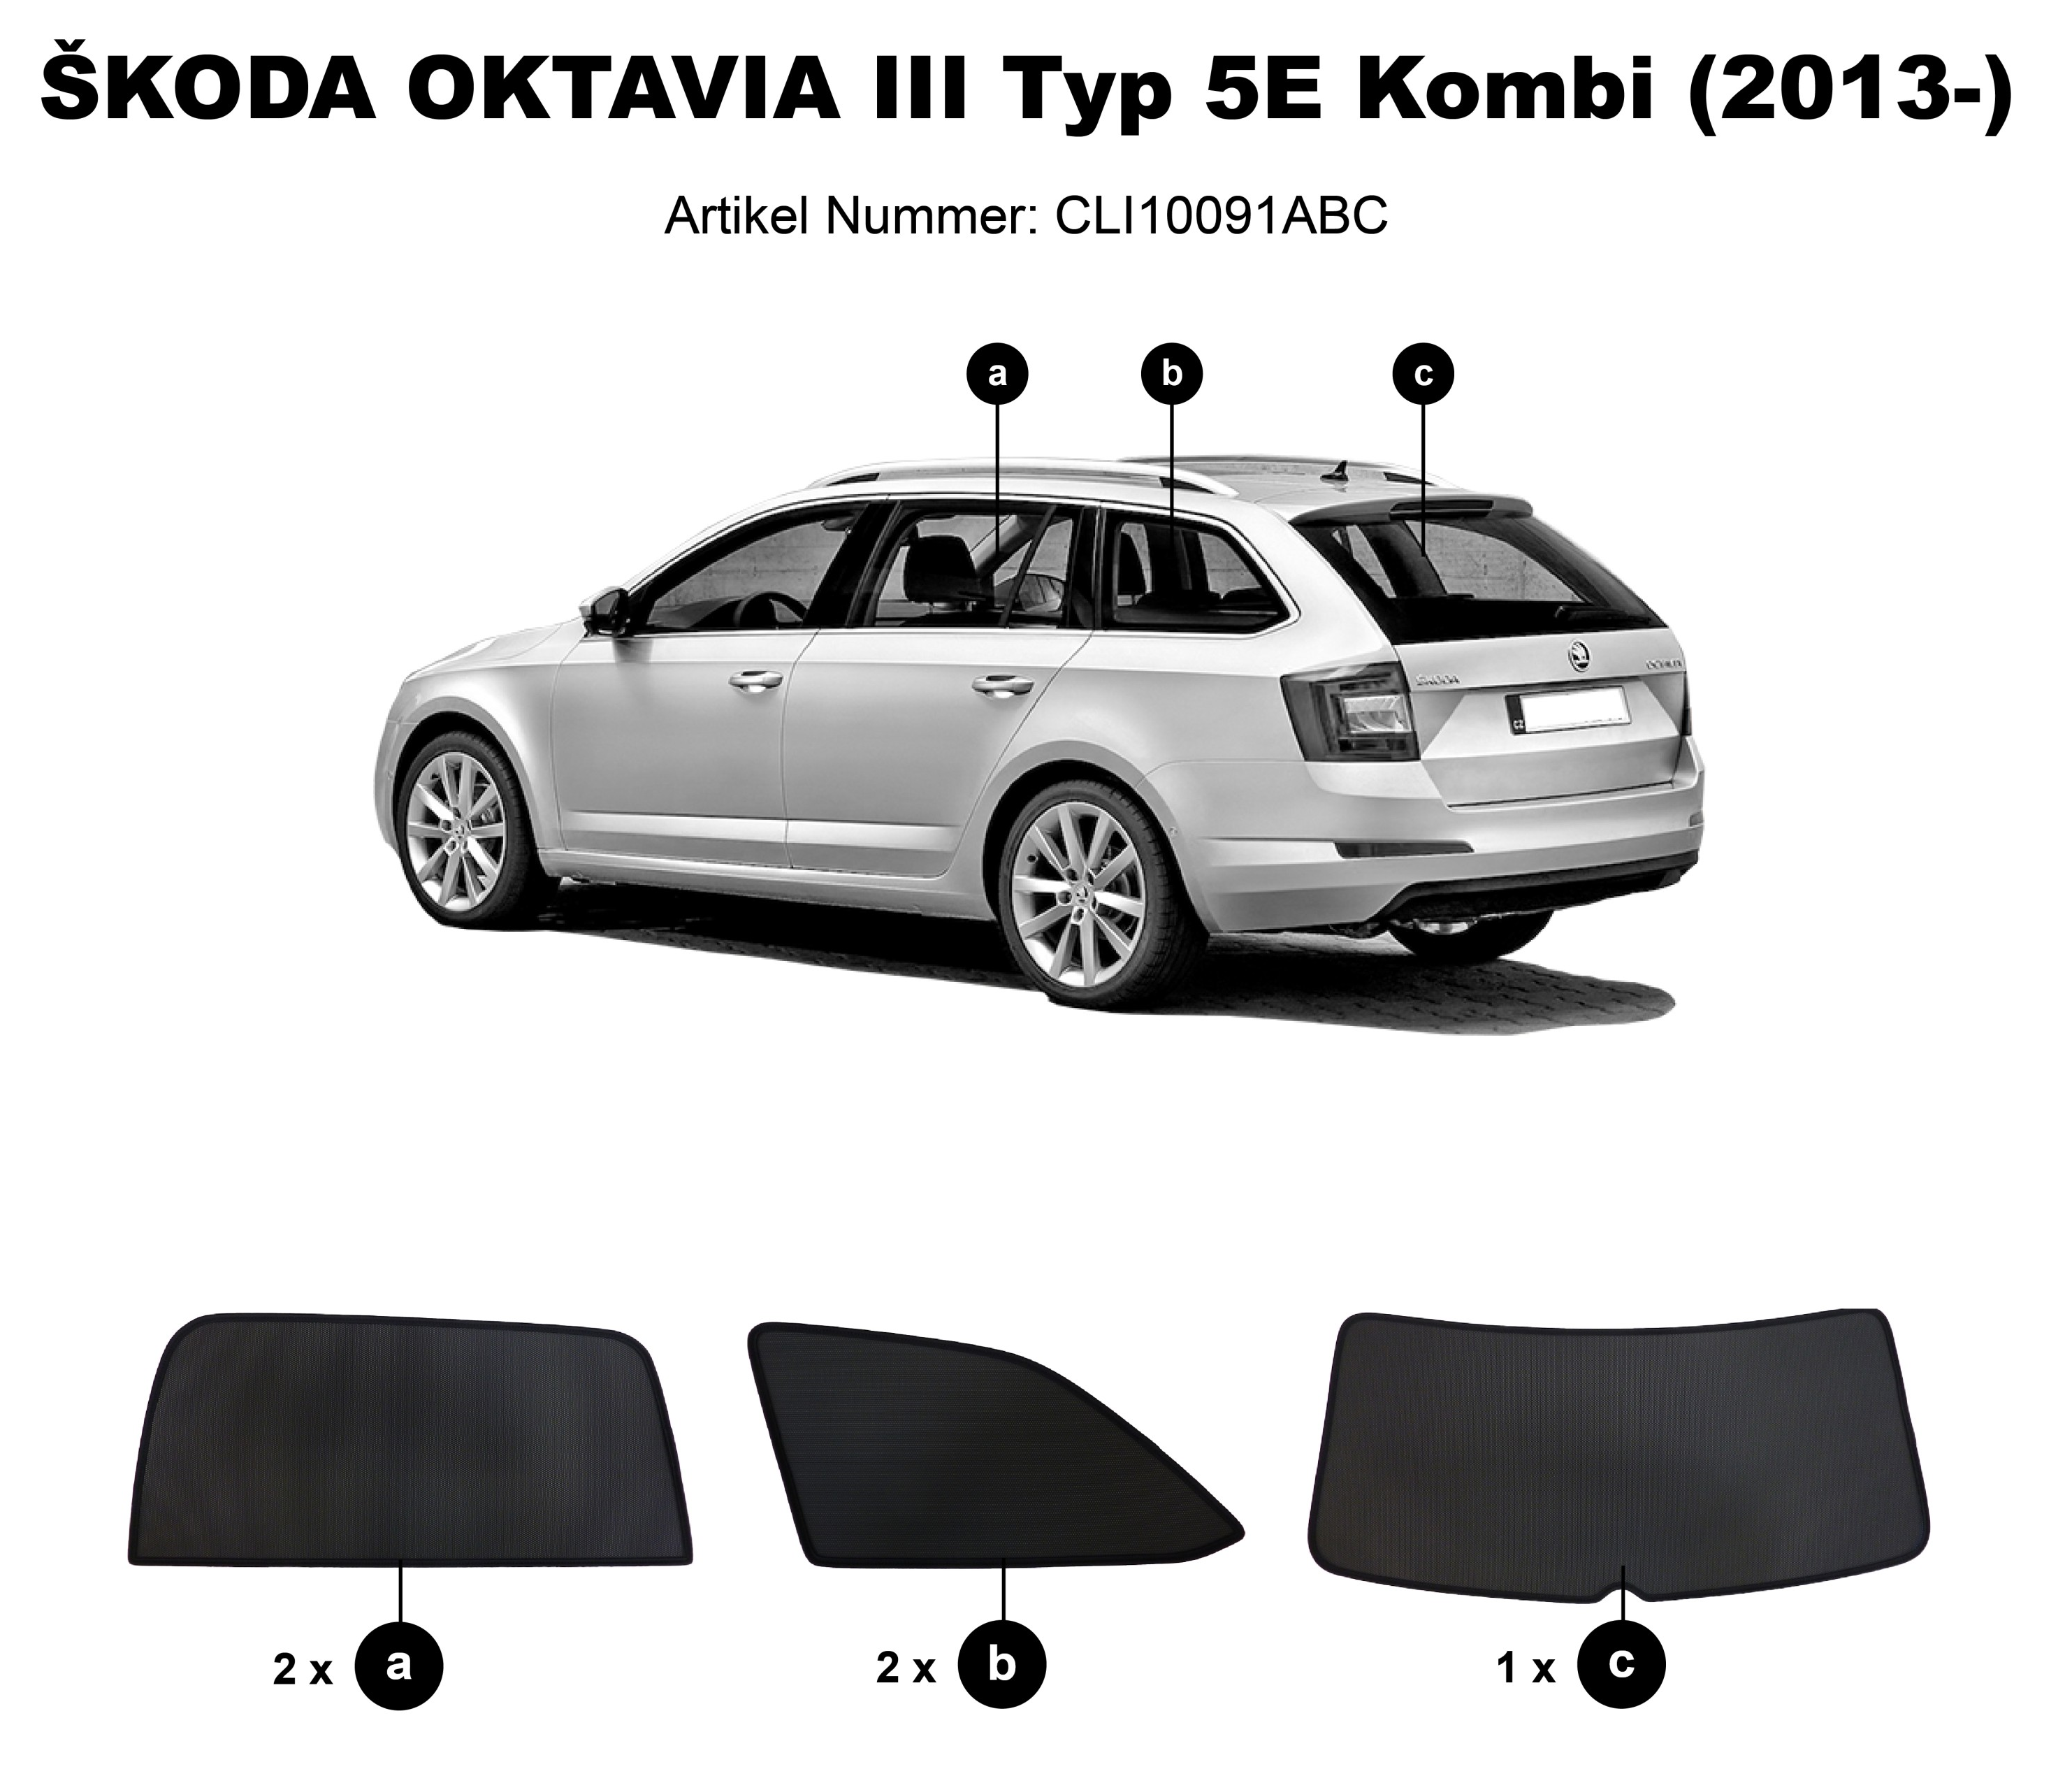 https://www.sonnenschutz-pkw.de/images/product_images/original_images/Skoda-Octavia-Combi-CLI10091ABC.png